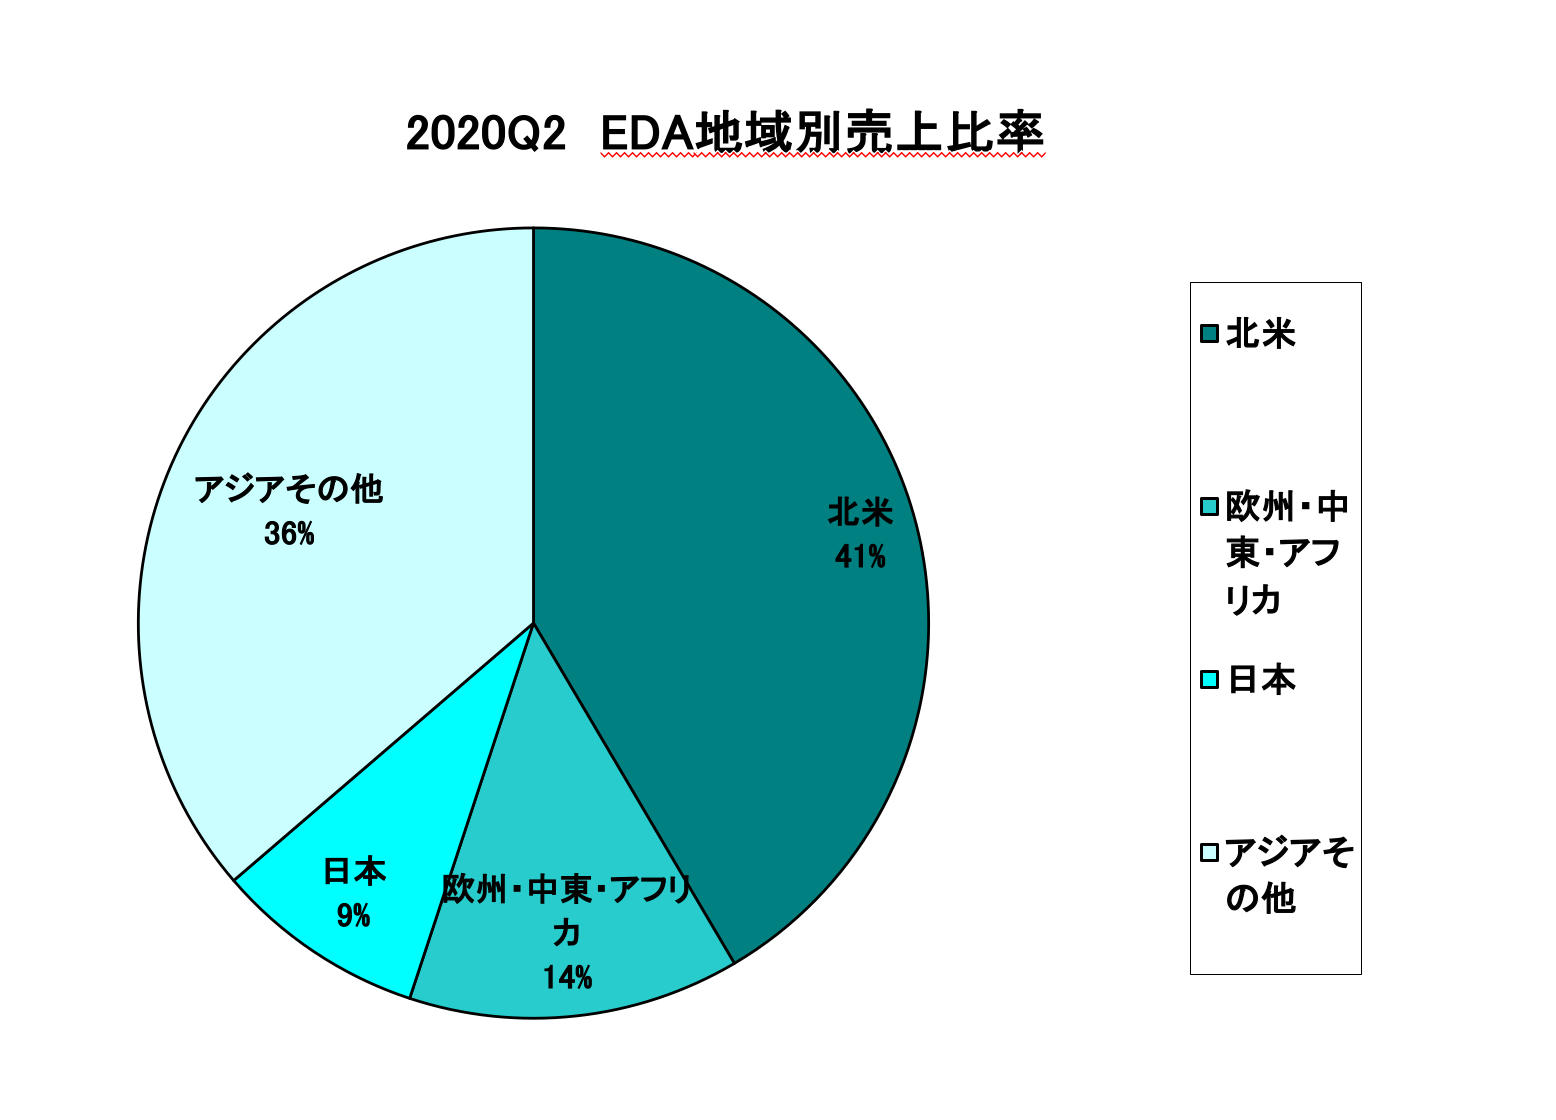 https://www.eda-express.com/%E3%82%B9%E3%82%AF%E3%83%AA%E3%83%BC%E3%83%B3%E3%82%B7%E3%83%A7%E3%83%83%E3%83%88%202020-10-06%2014.15.58.png